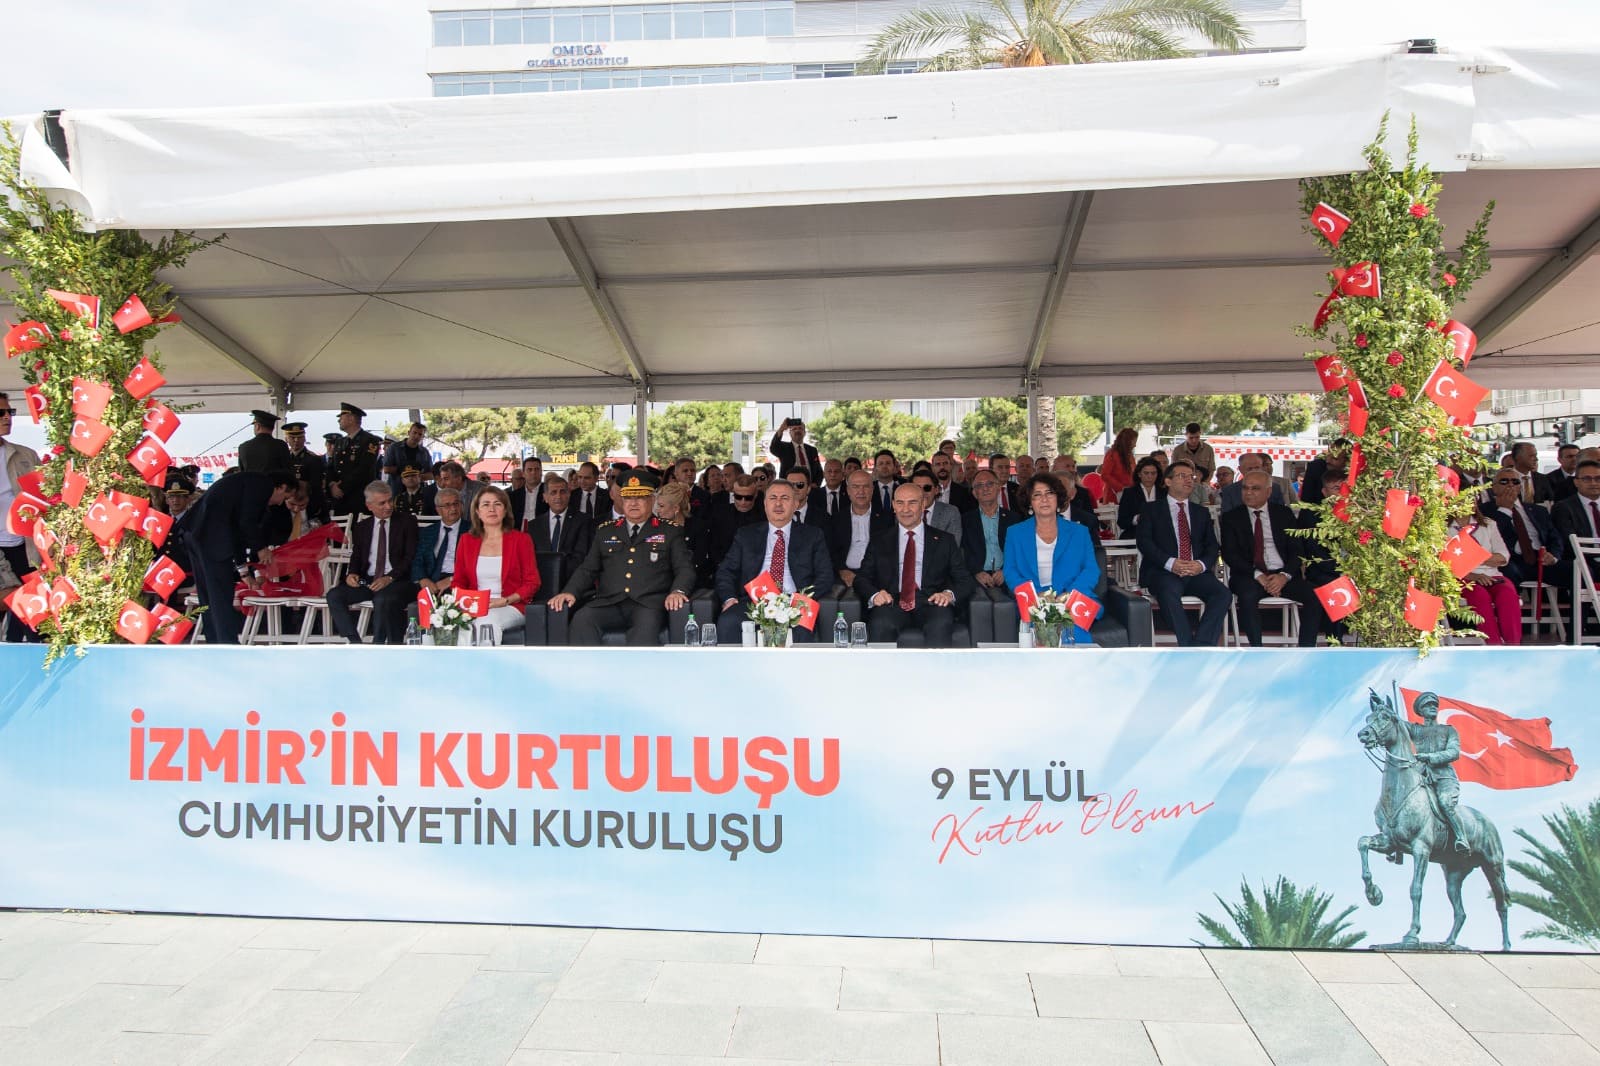 Bağımsızlık ve kurtuluş ruhu: İzmir'de 101'inci yıl coşkusu1